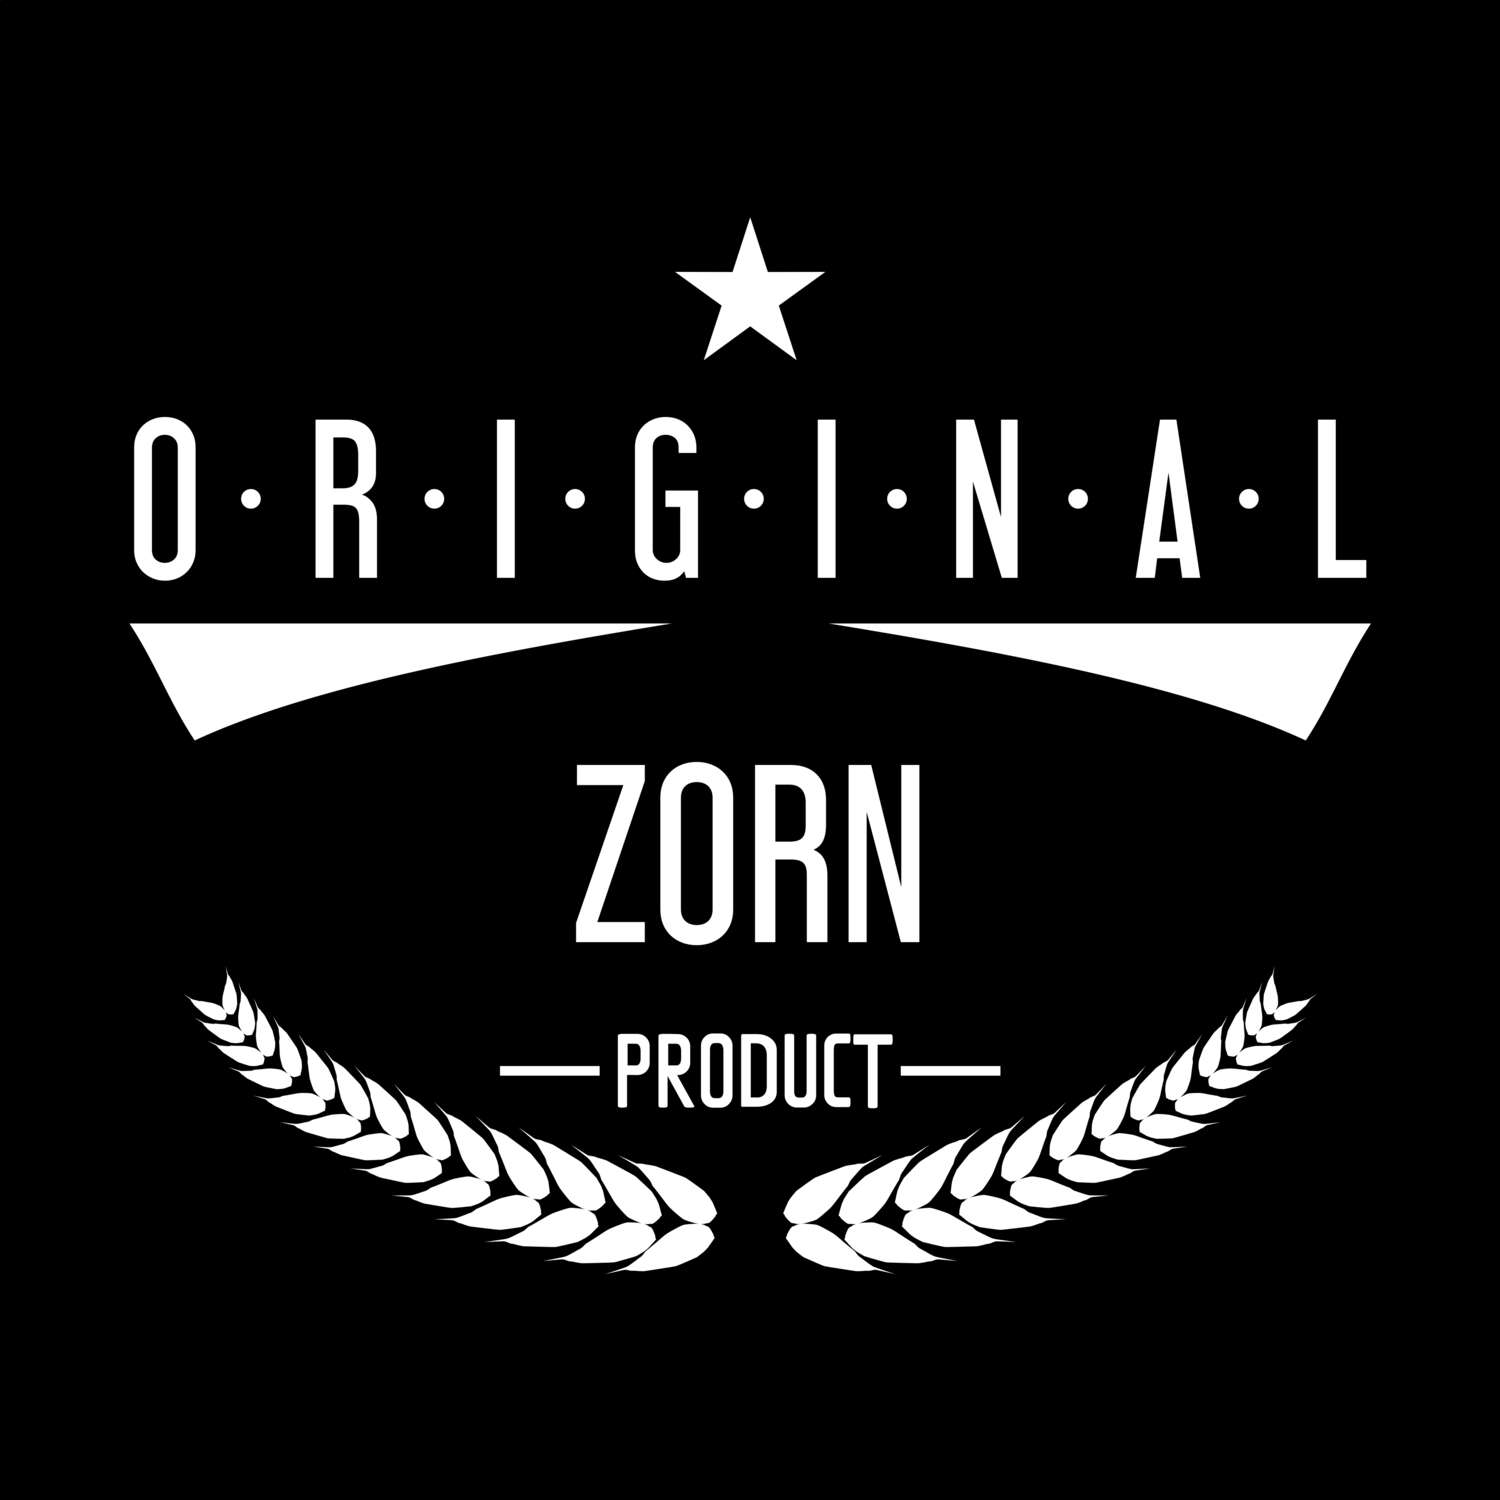 Zorn T-Shirt »Original Product«